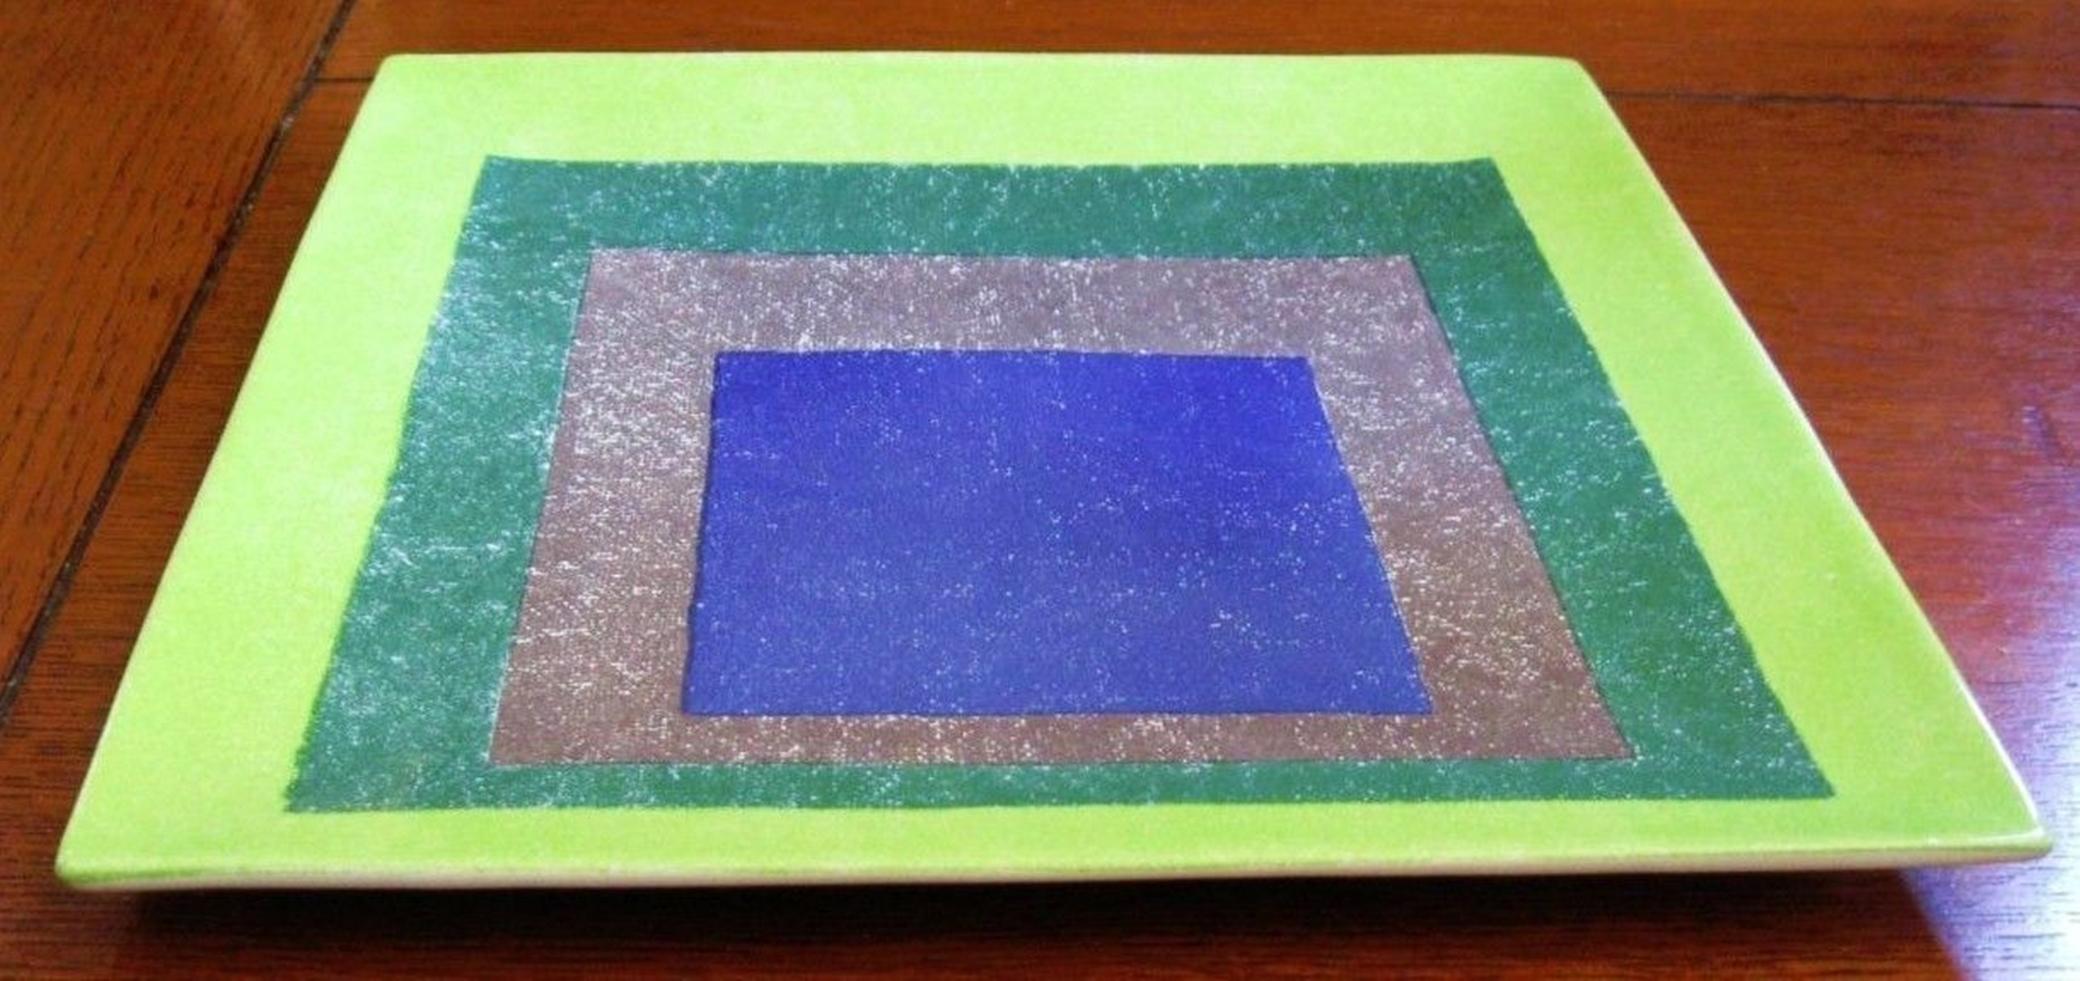 Josef Albers
Studie für Homage to the Square, 1999
Siebdruck auf glasiertem italienischen Porzellan in der Originalverpackung des Museum of Contemporary Art (MOCA) LA.
Josef Albers, 